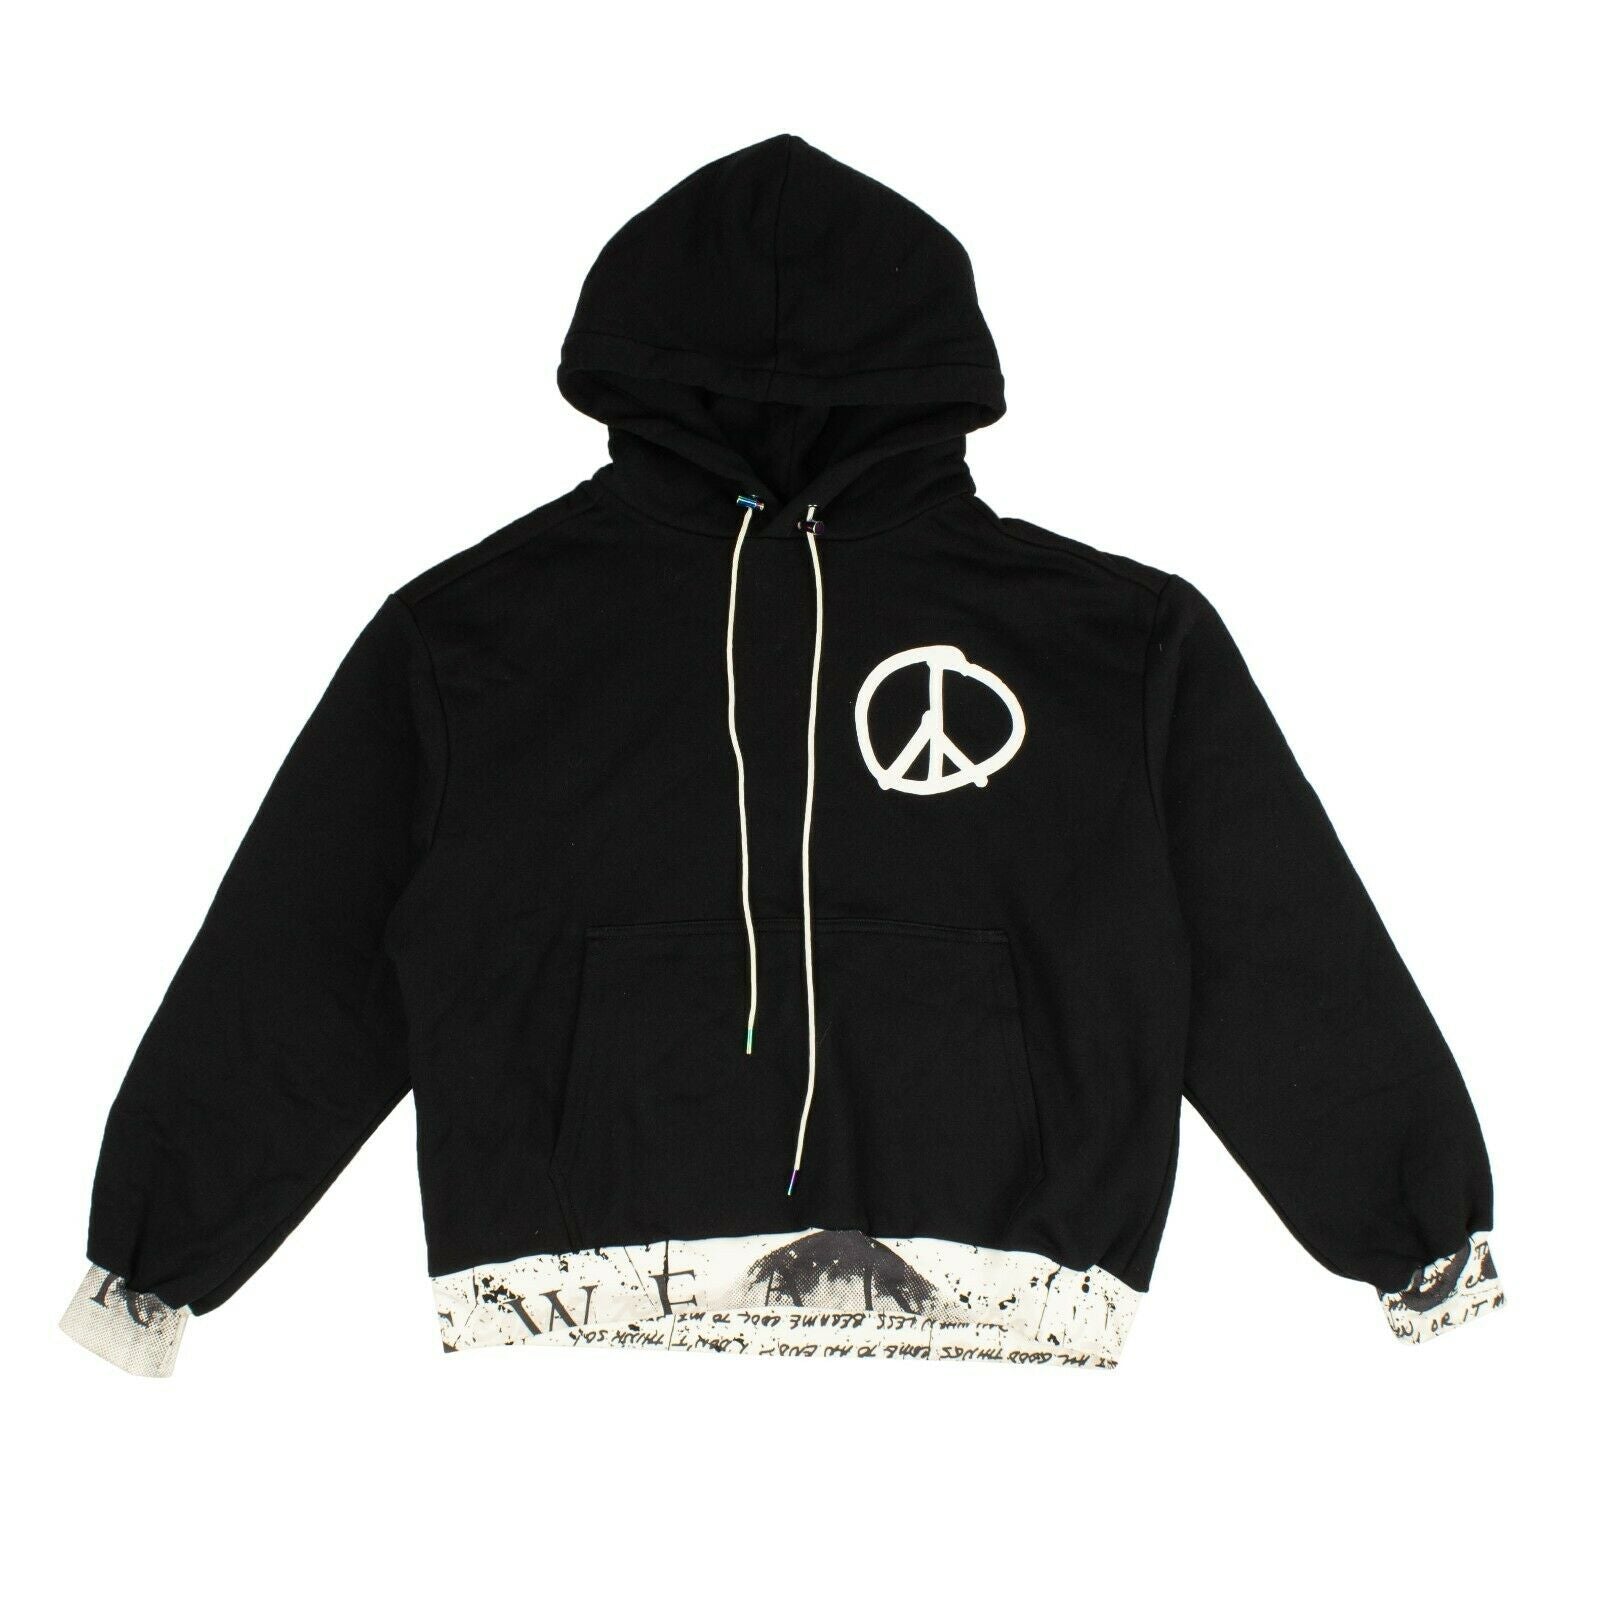 Bossi Peace Sign Hoodie Sweatshirt - Black/White